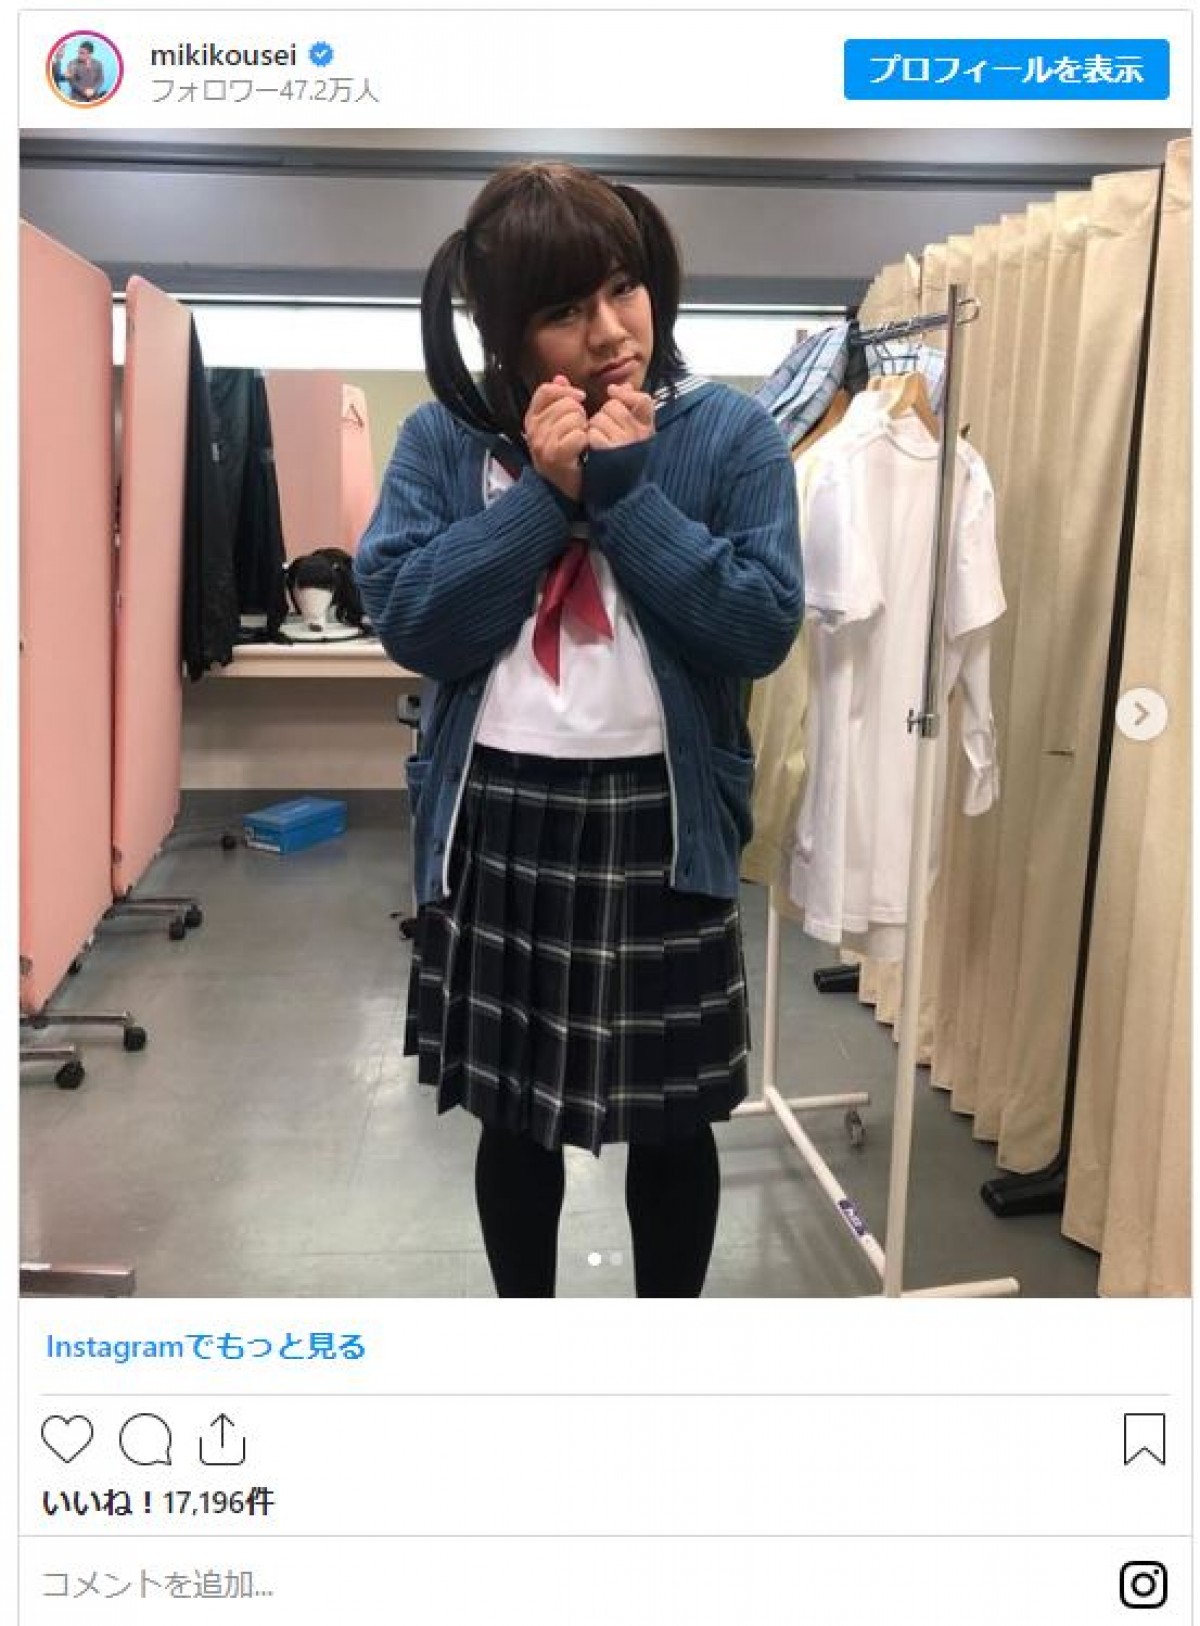 ミキ・亜生、“女子高生”に変身 「ダントツめっちゃ可愛かった」の声